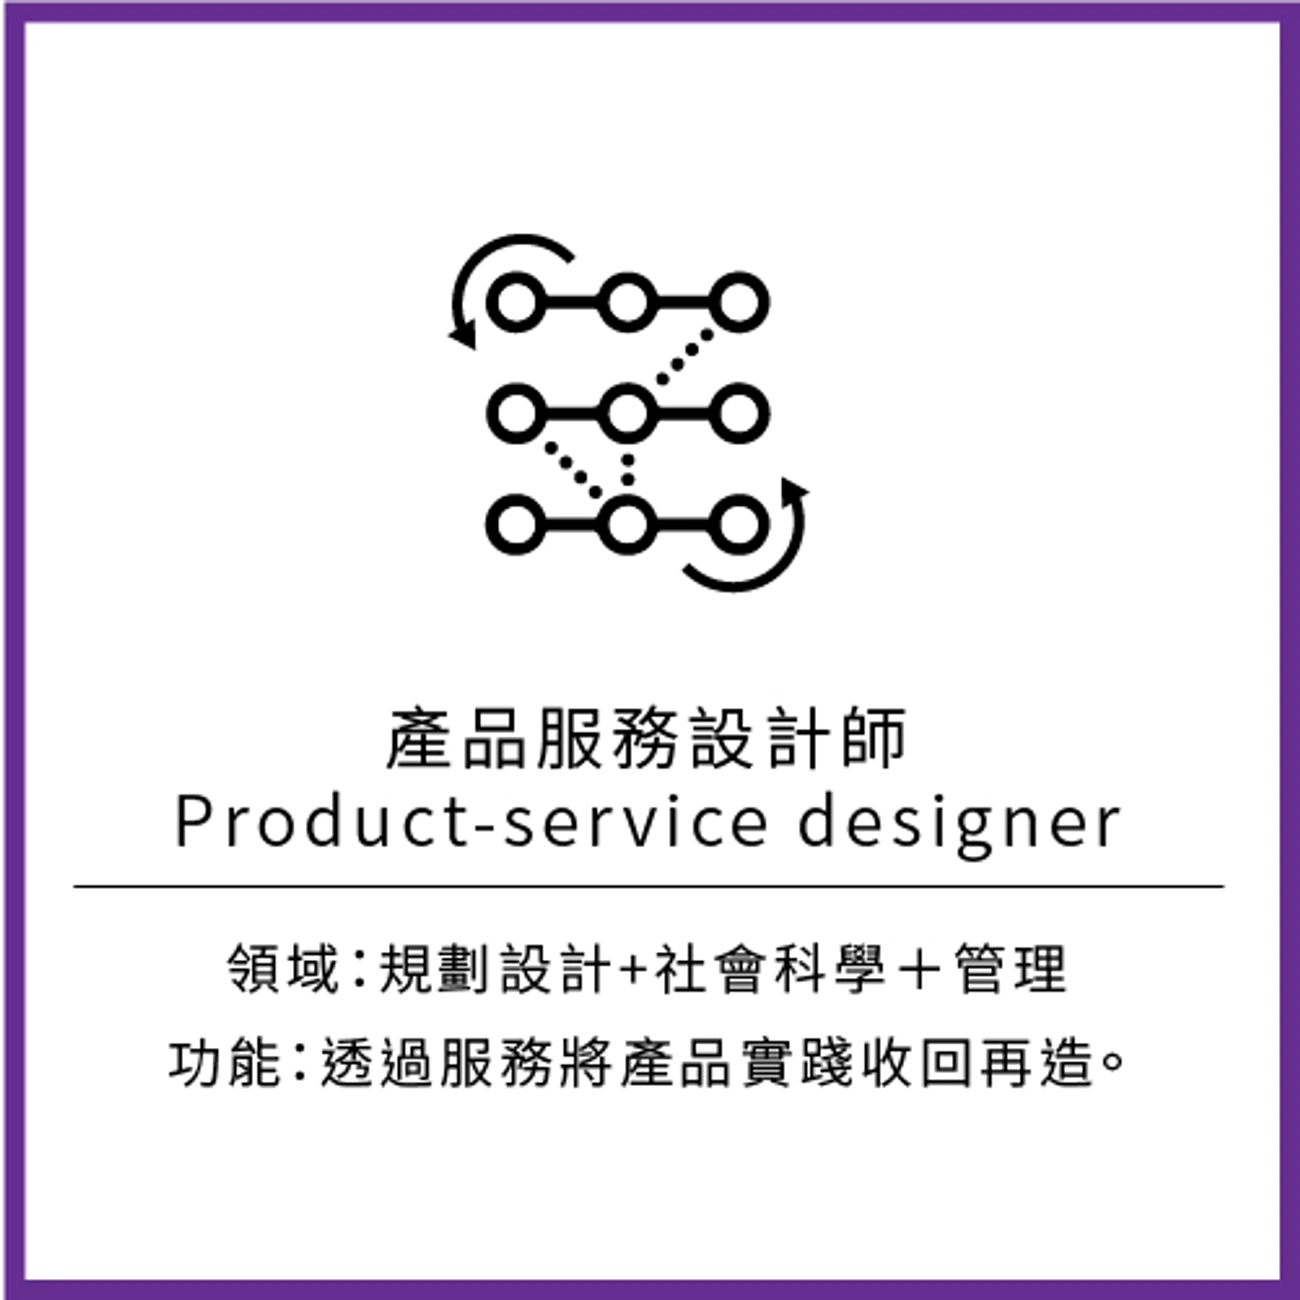 產品服務設計師
